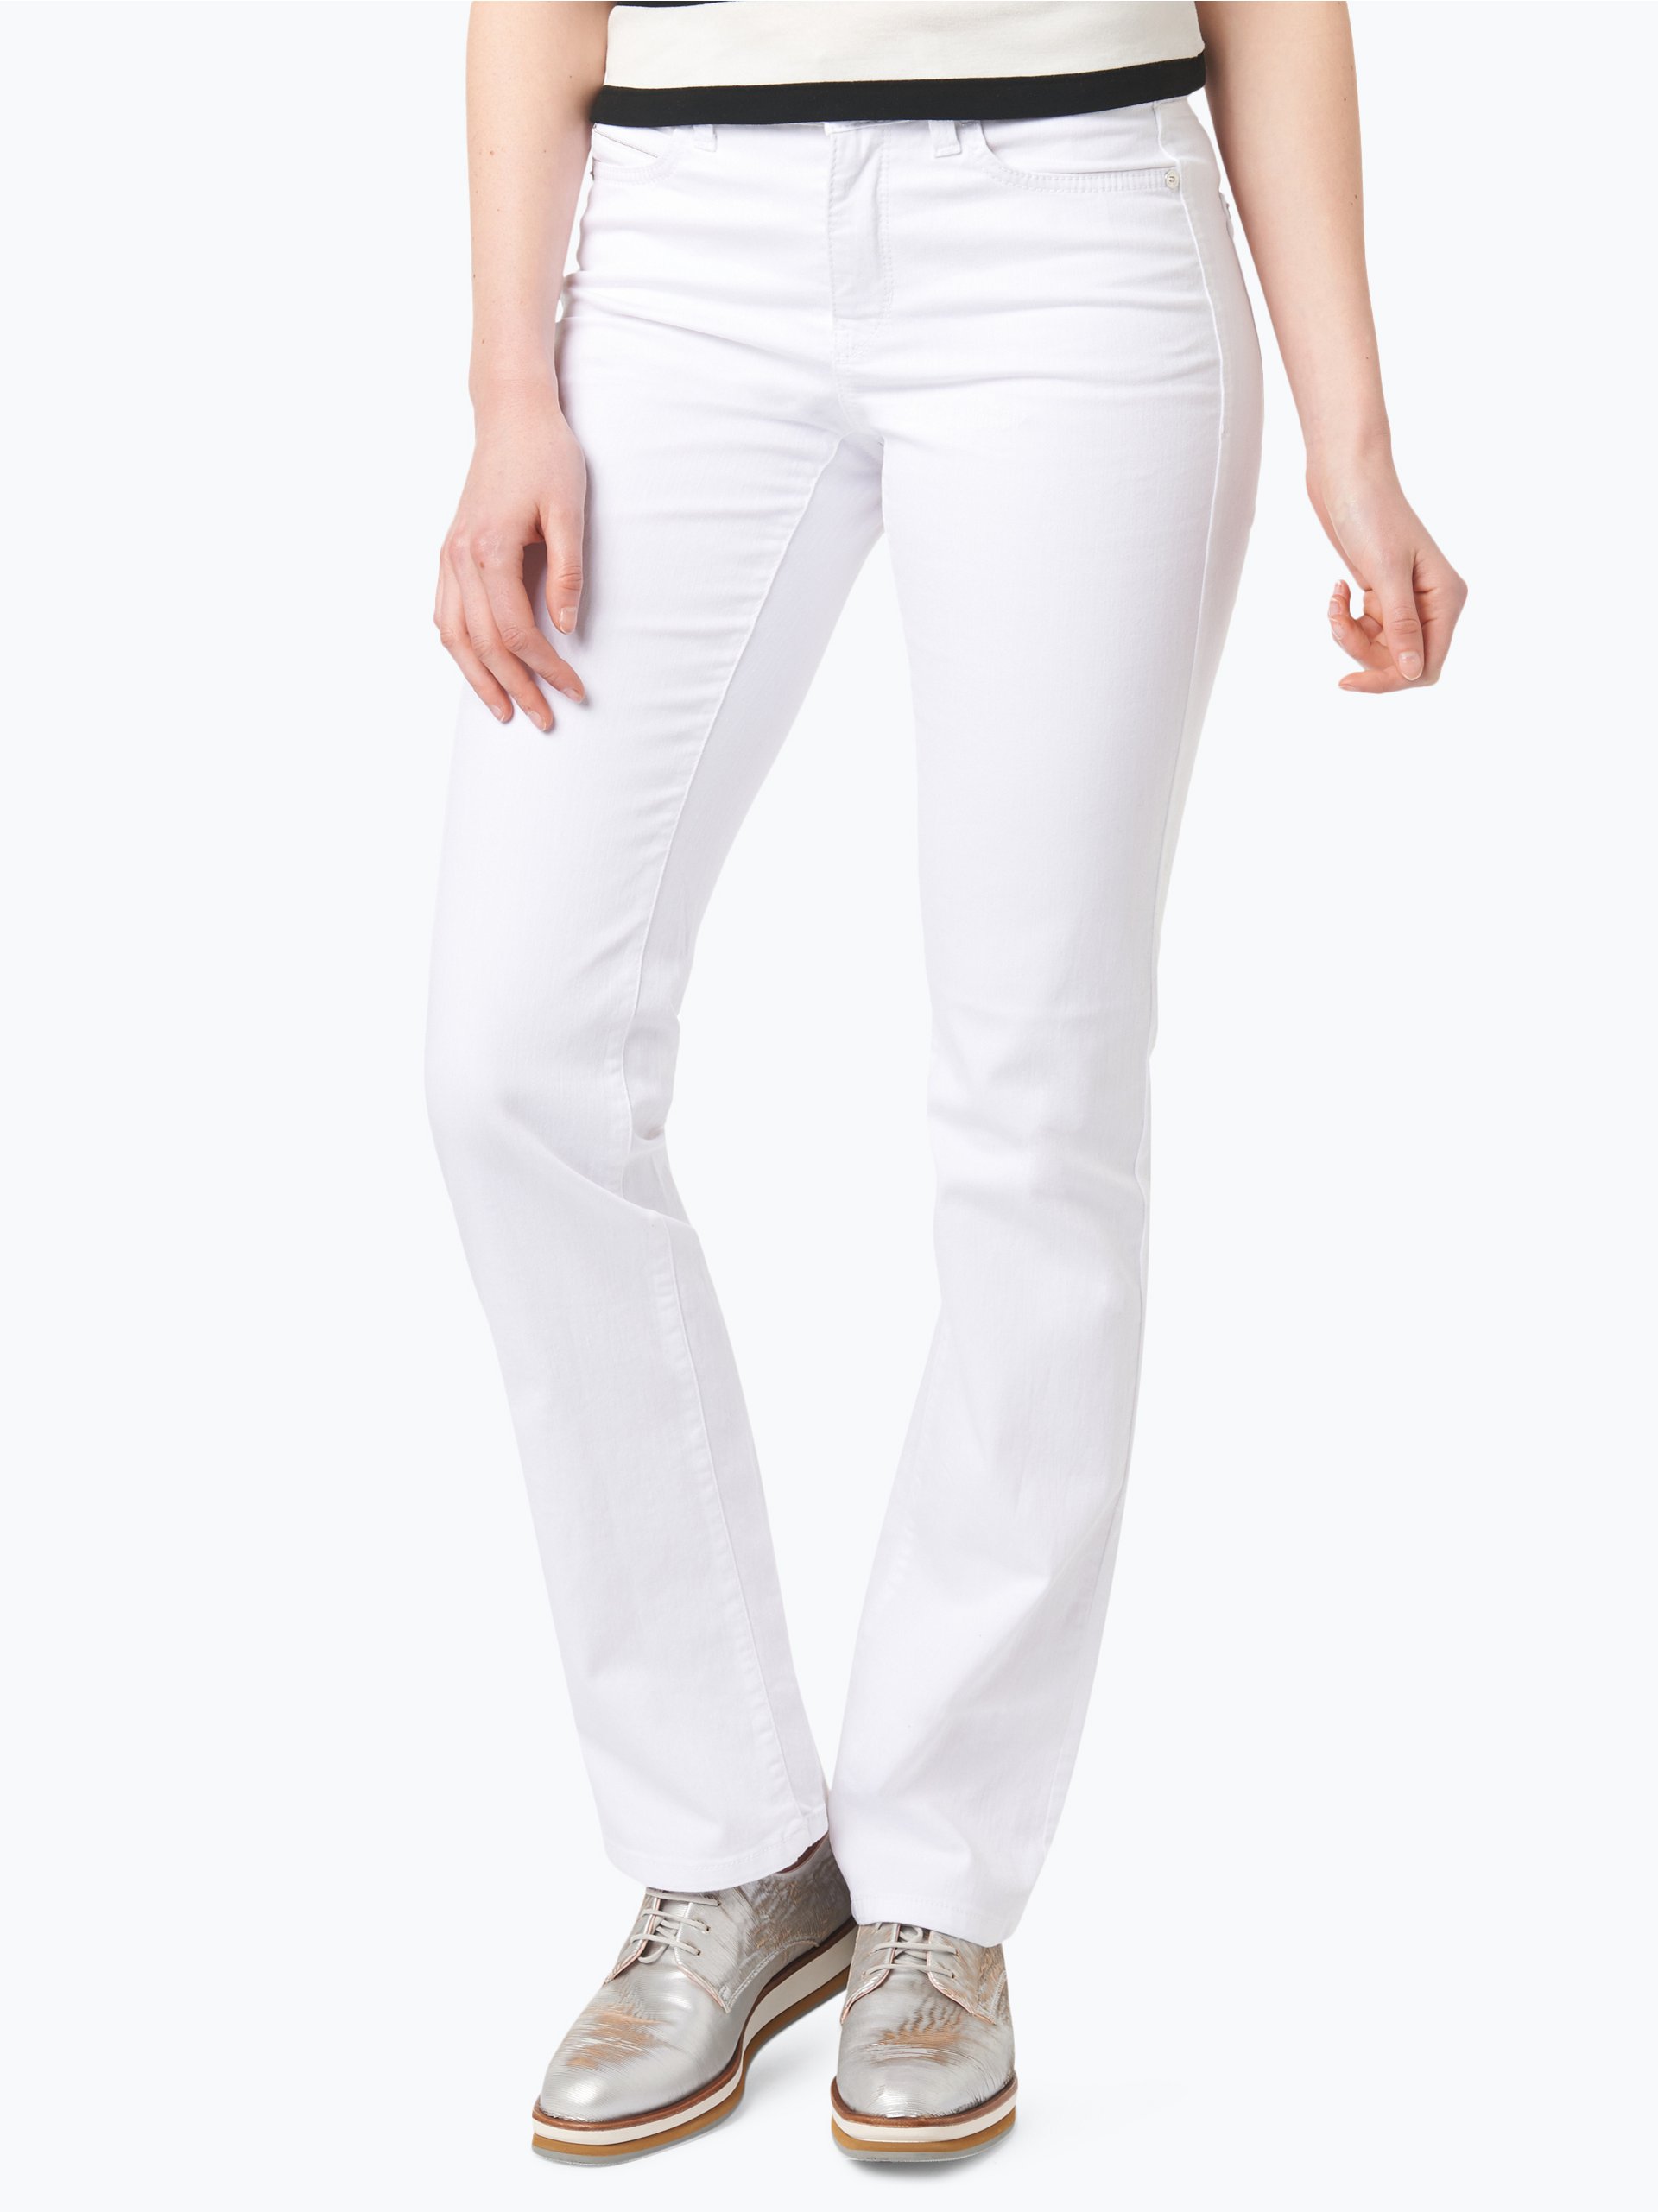 Aas Automatisering Geval Cambio Damen Jeans - Norah online kaufen | PEEK-UND-CLOPPENBURG.DE